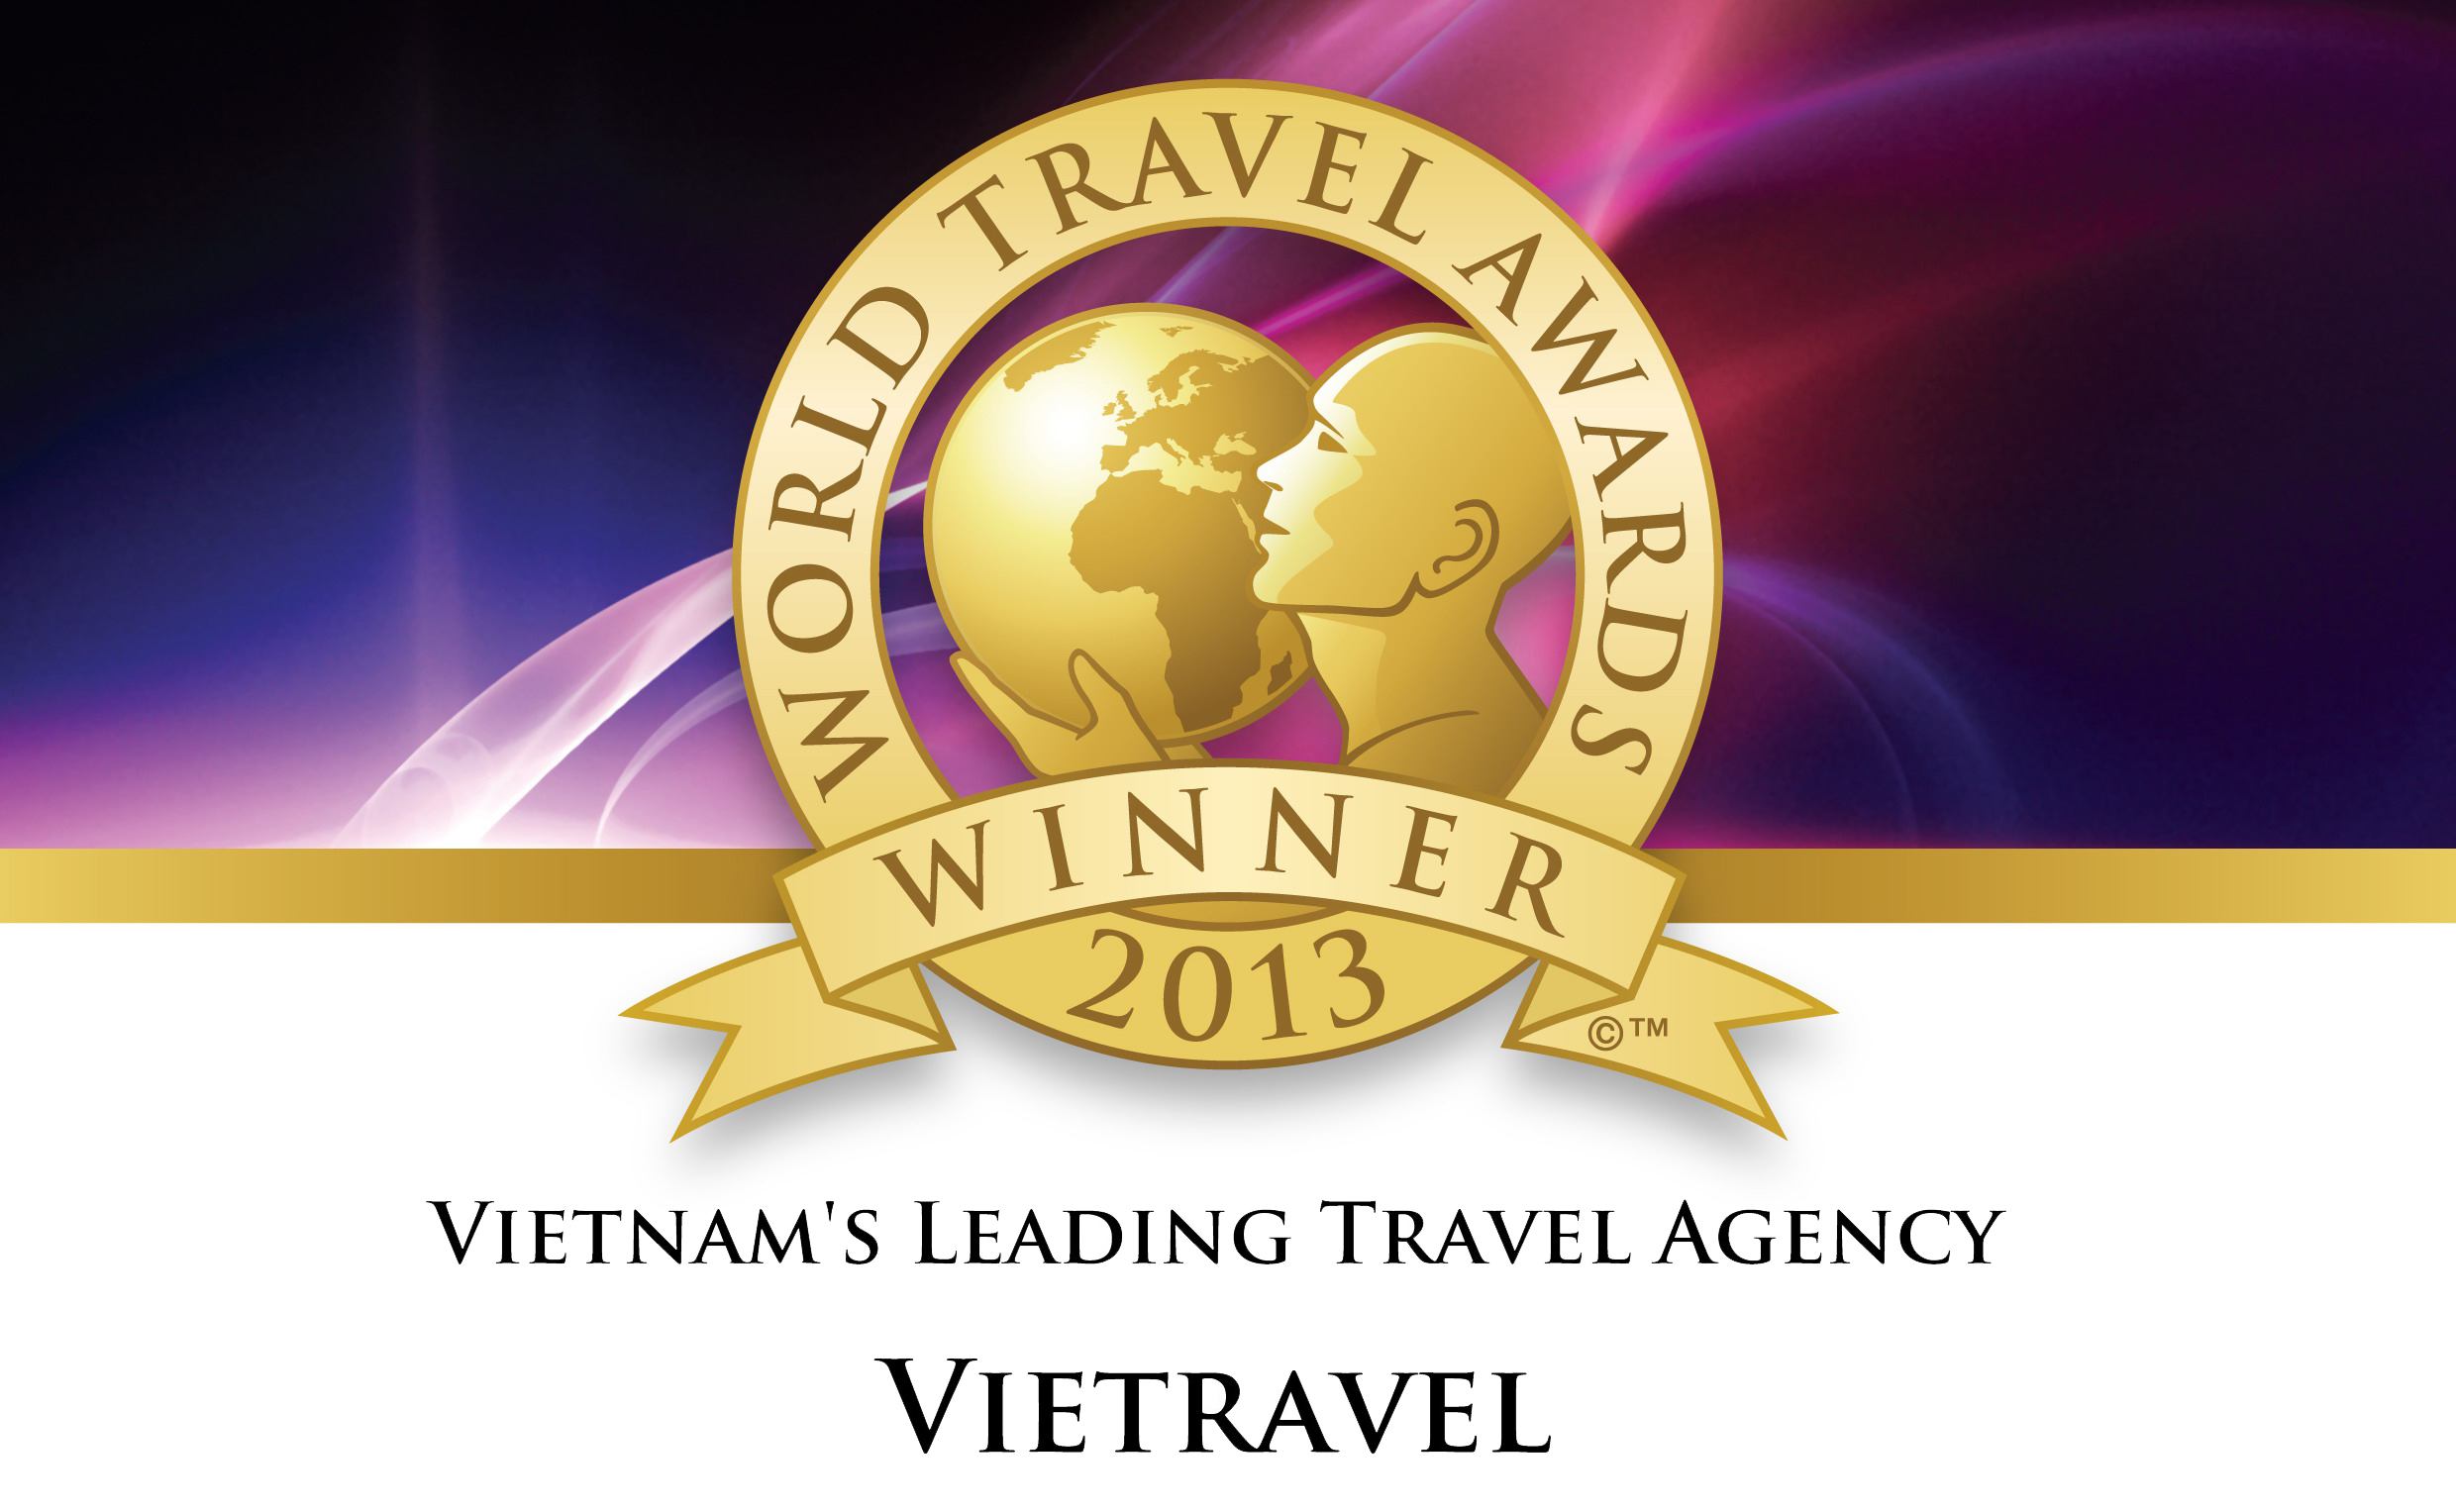 VIETRAVEL AWARDED AT THE WORLD TRAVEL AWARDS (WTA) AND TTG TRAVEL AWARDS